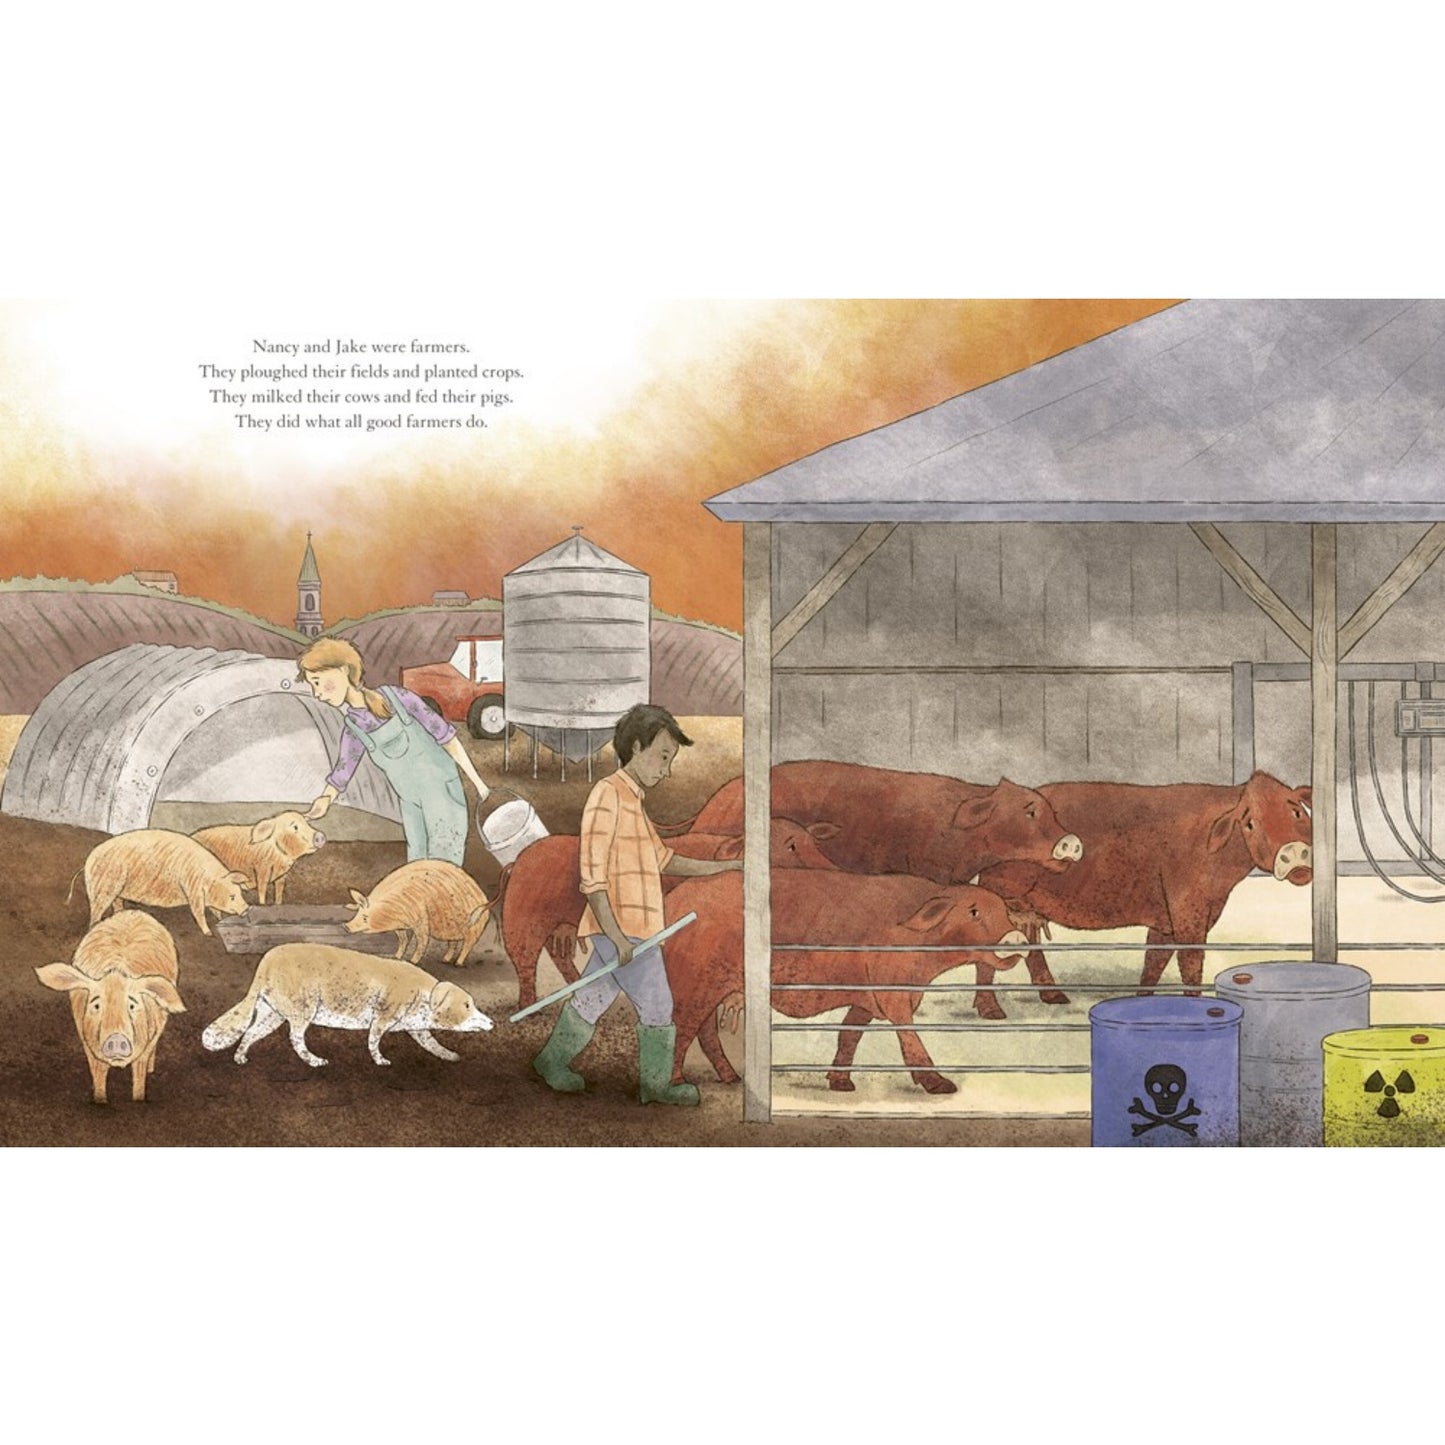 When We Went Wild | Children's Book on Farm Life